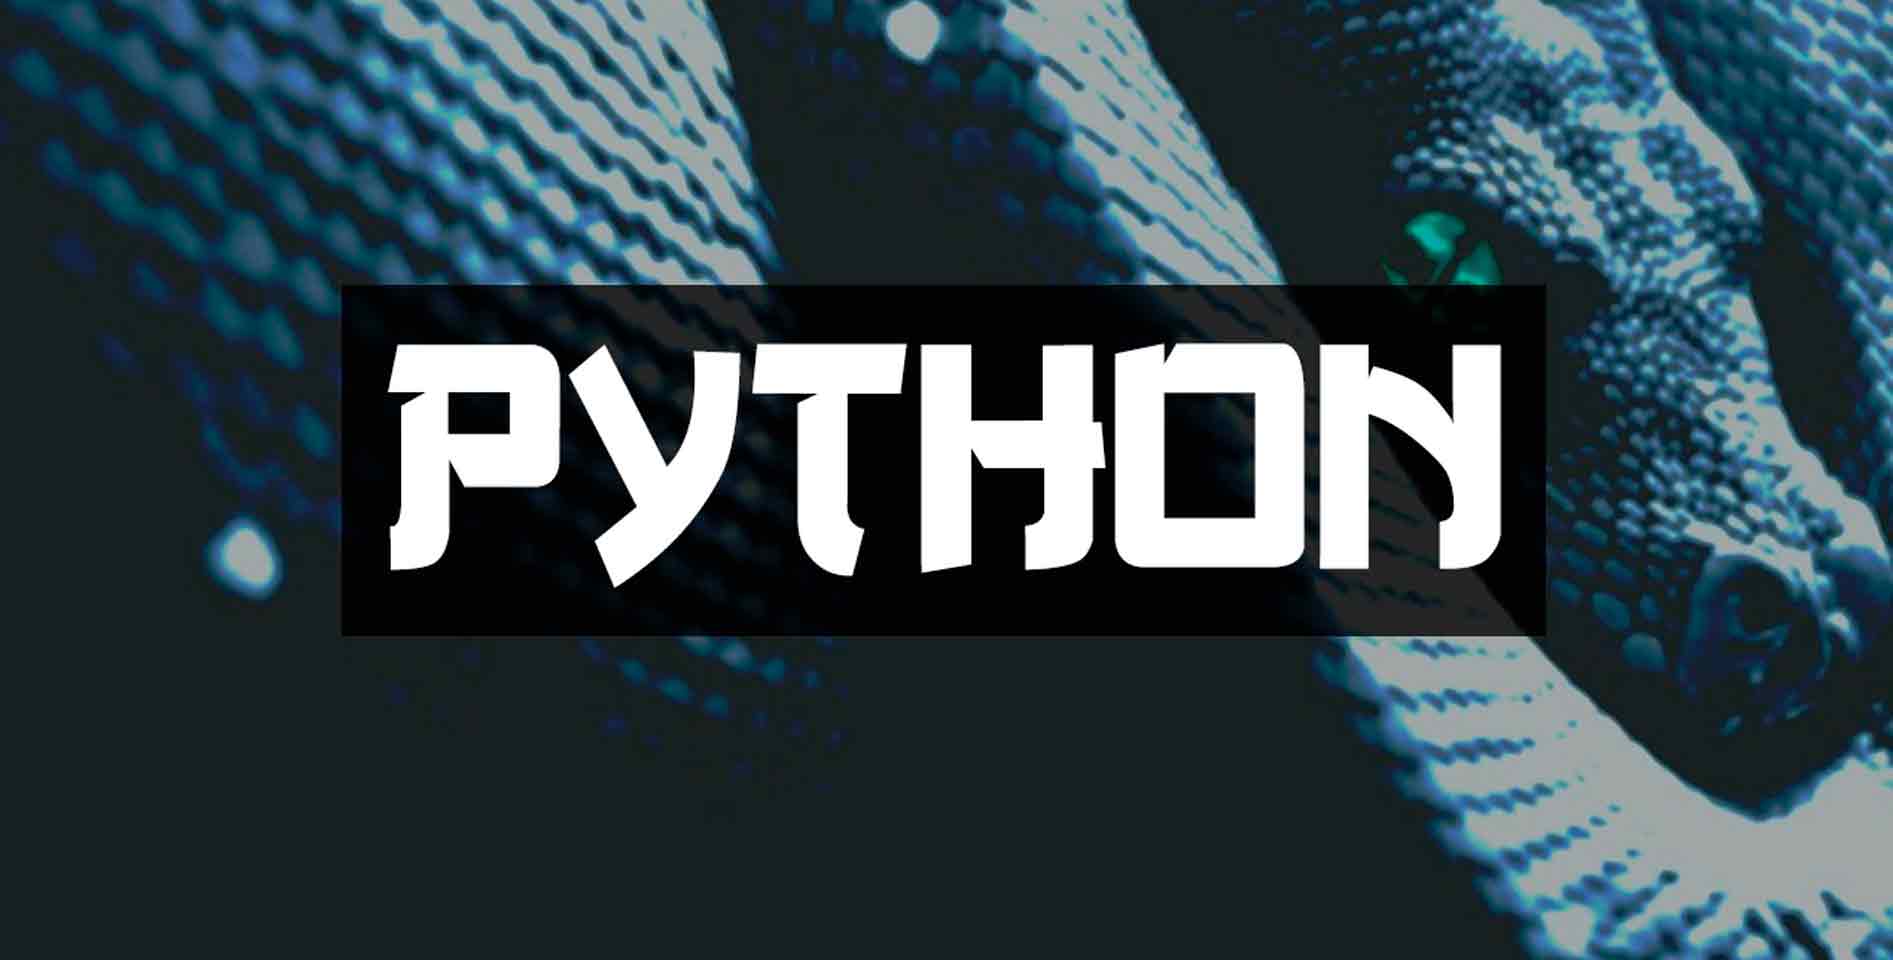 Хауди Хо — Python Джедай (2016 год). По стандартам США